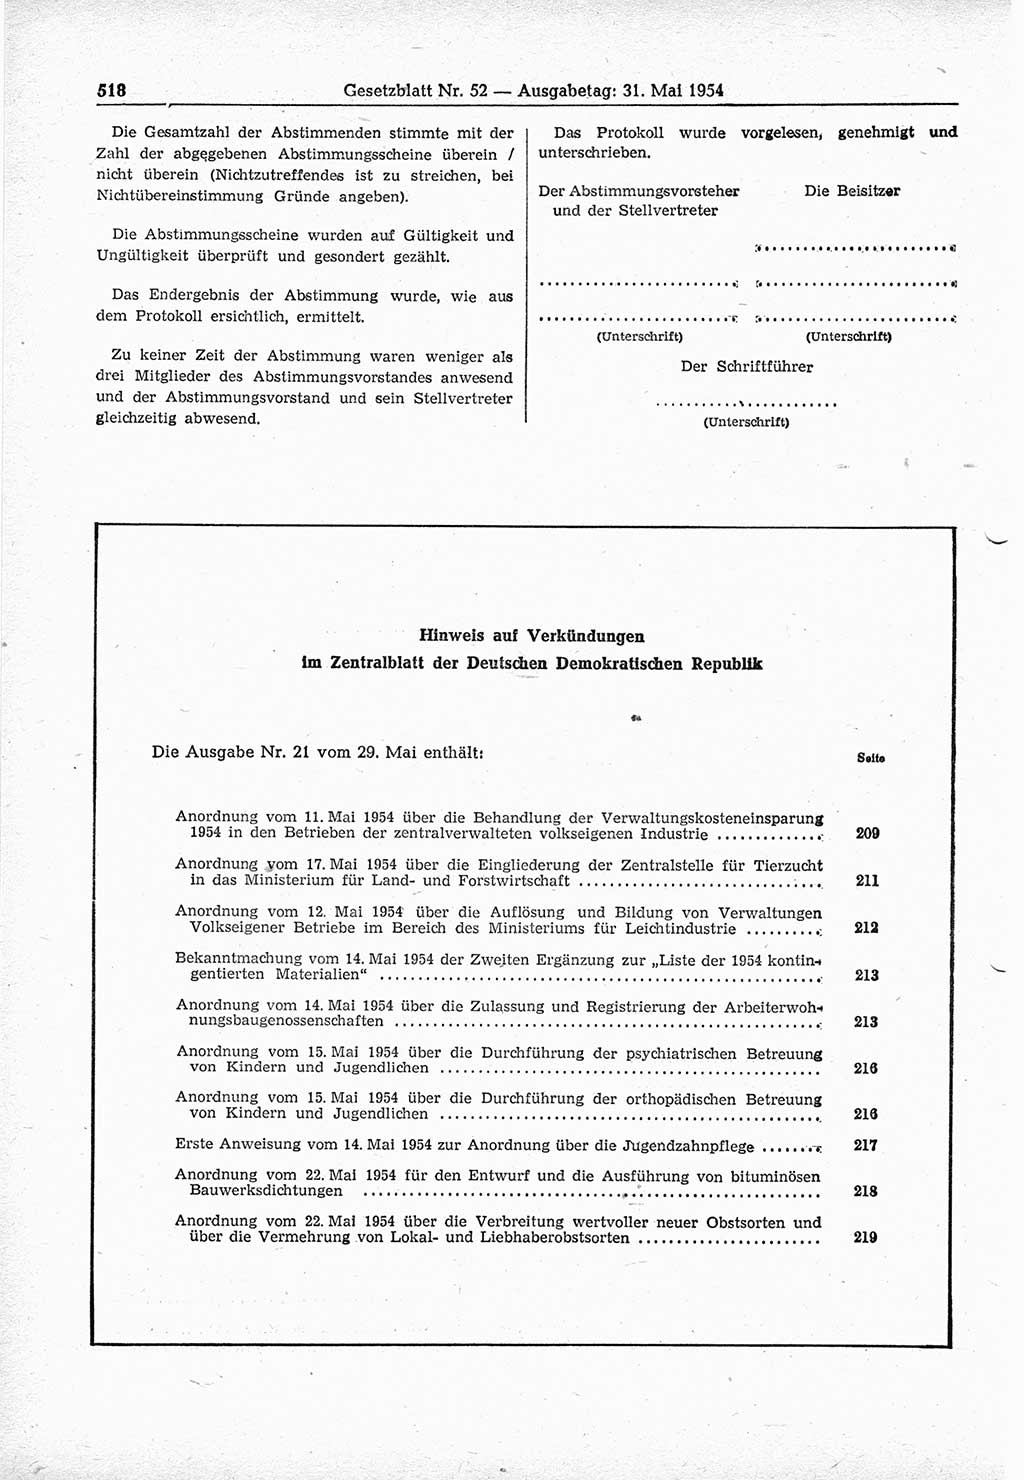 Gesetzblatt (GBl.) der Deutschen Demokratischen Republik (DDR) 1954, Seite 518 (GBl. DDR 1954, S. 518)